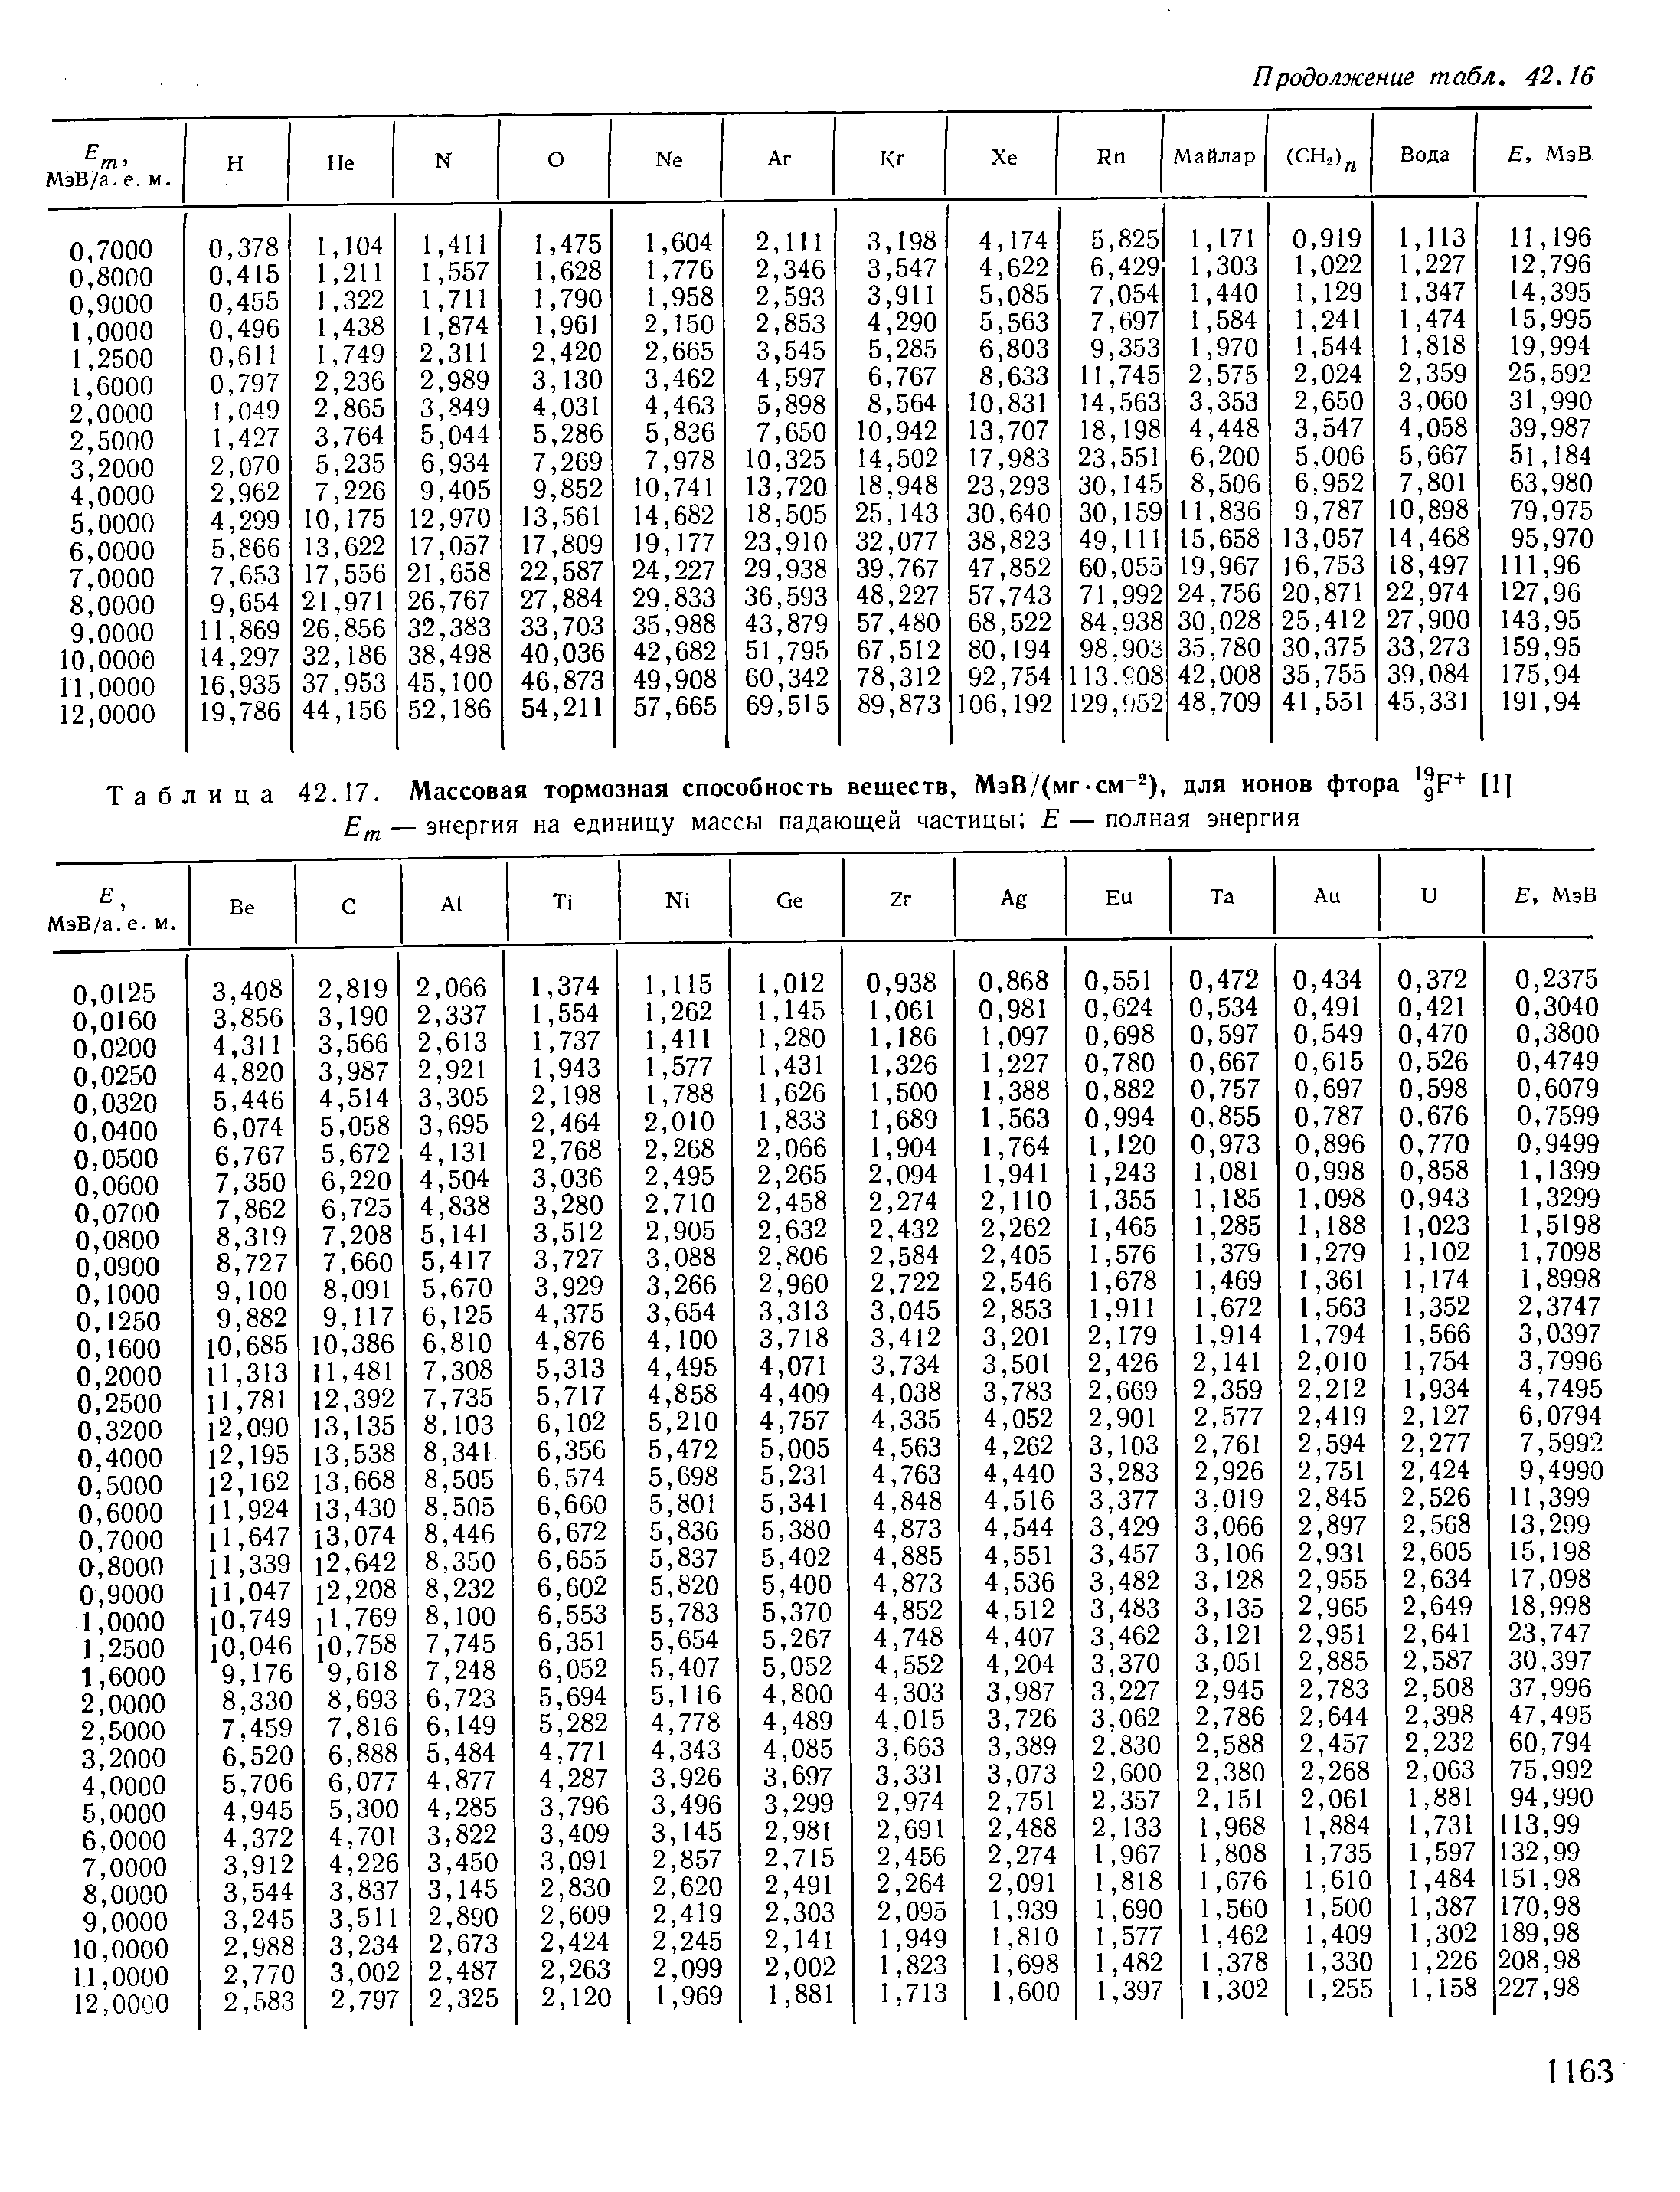 Таблица 42.17. Массовая тормозная способность веществ, МэВ/(мг-см-2), для ионов фтора [IJ
